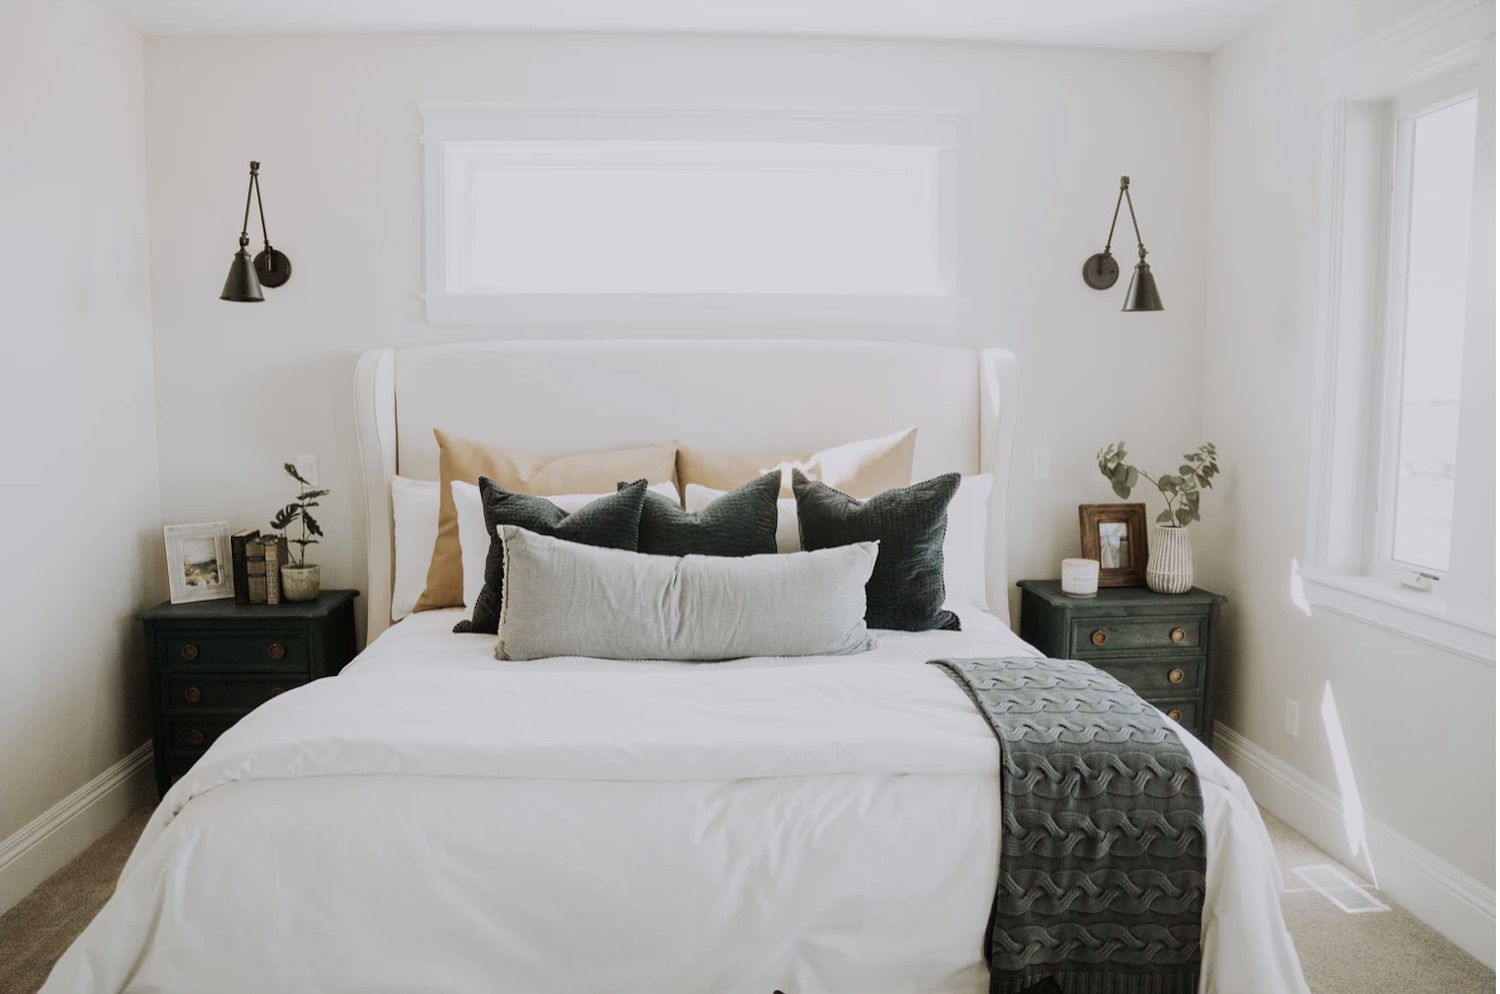 Chiếc giường lớn với thiết kế thoải mái sẽ mang lại cho bạn giấc ngủ êm ái